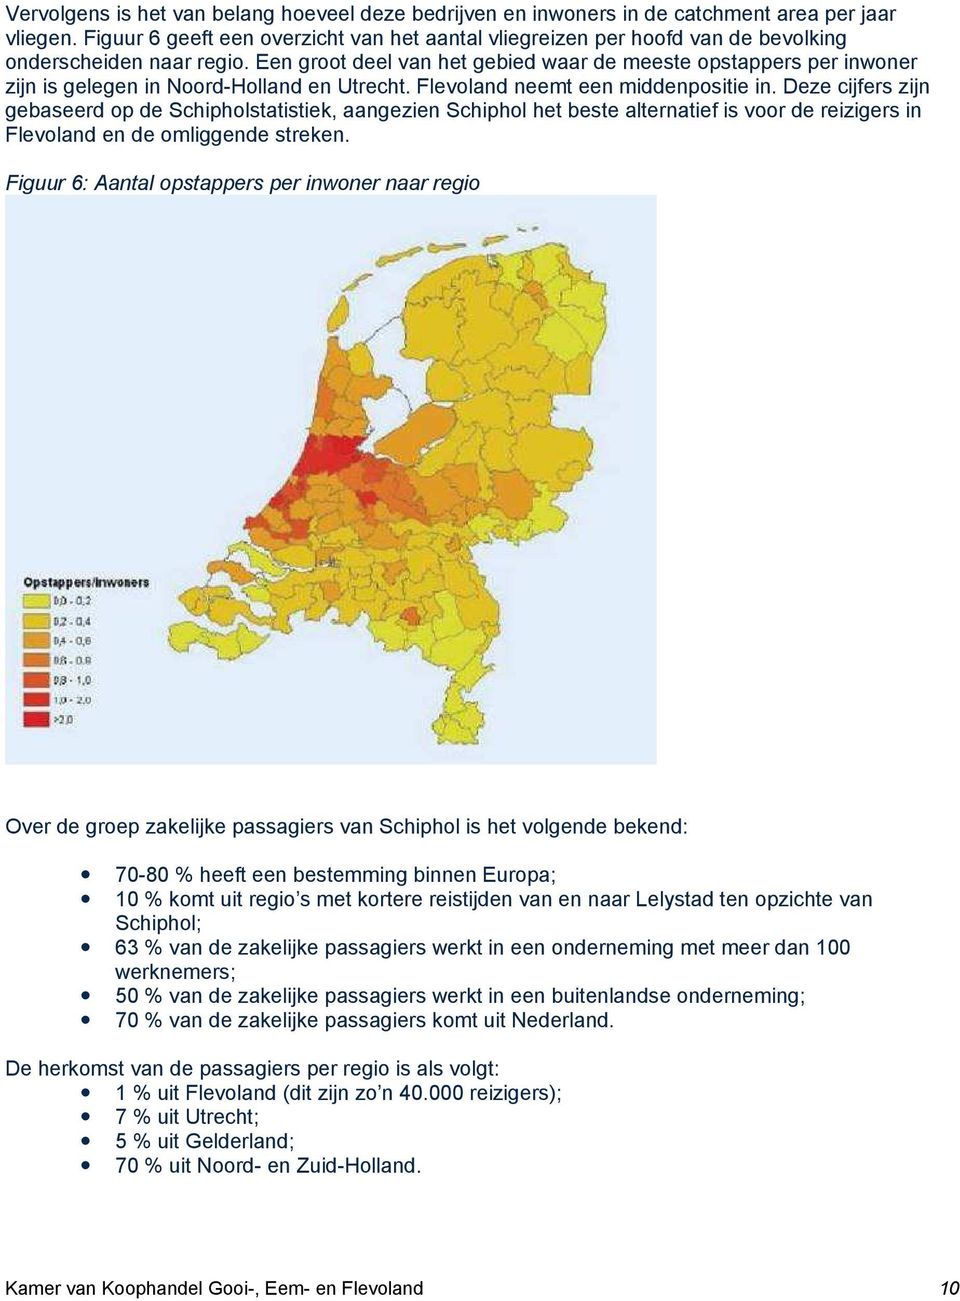 Een groot deel van het gebied waar de meeste opstappers per inwoner zijn is gelegen in Noord-Holland en Utrecht. Flevoland neemt een middenpositie in.